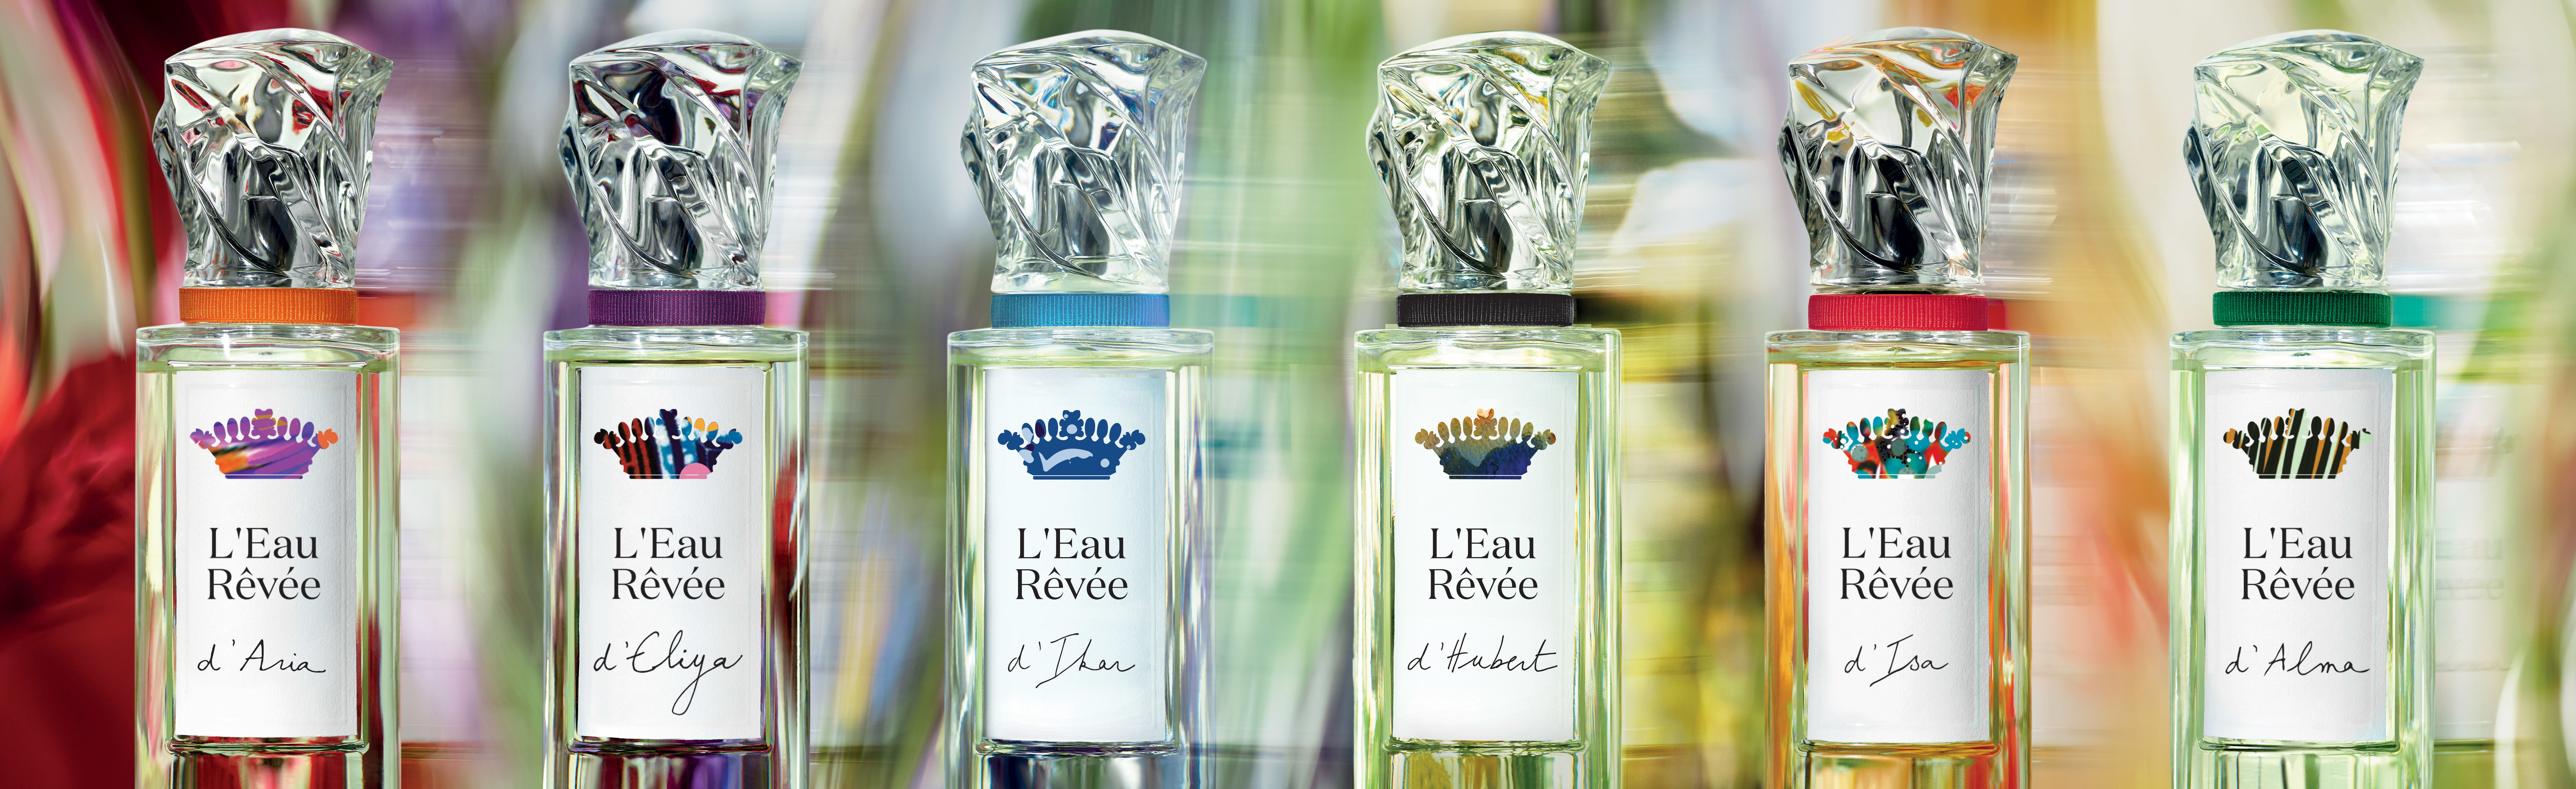 Sisley-Paris L'Eau Revee Fragrance Collection